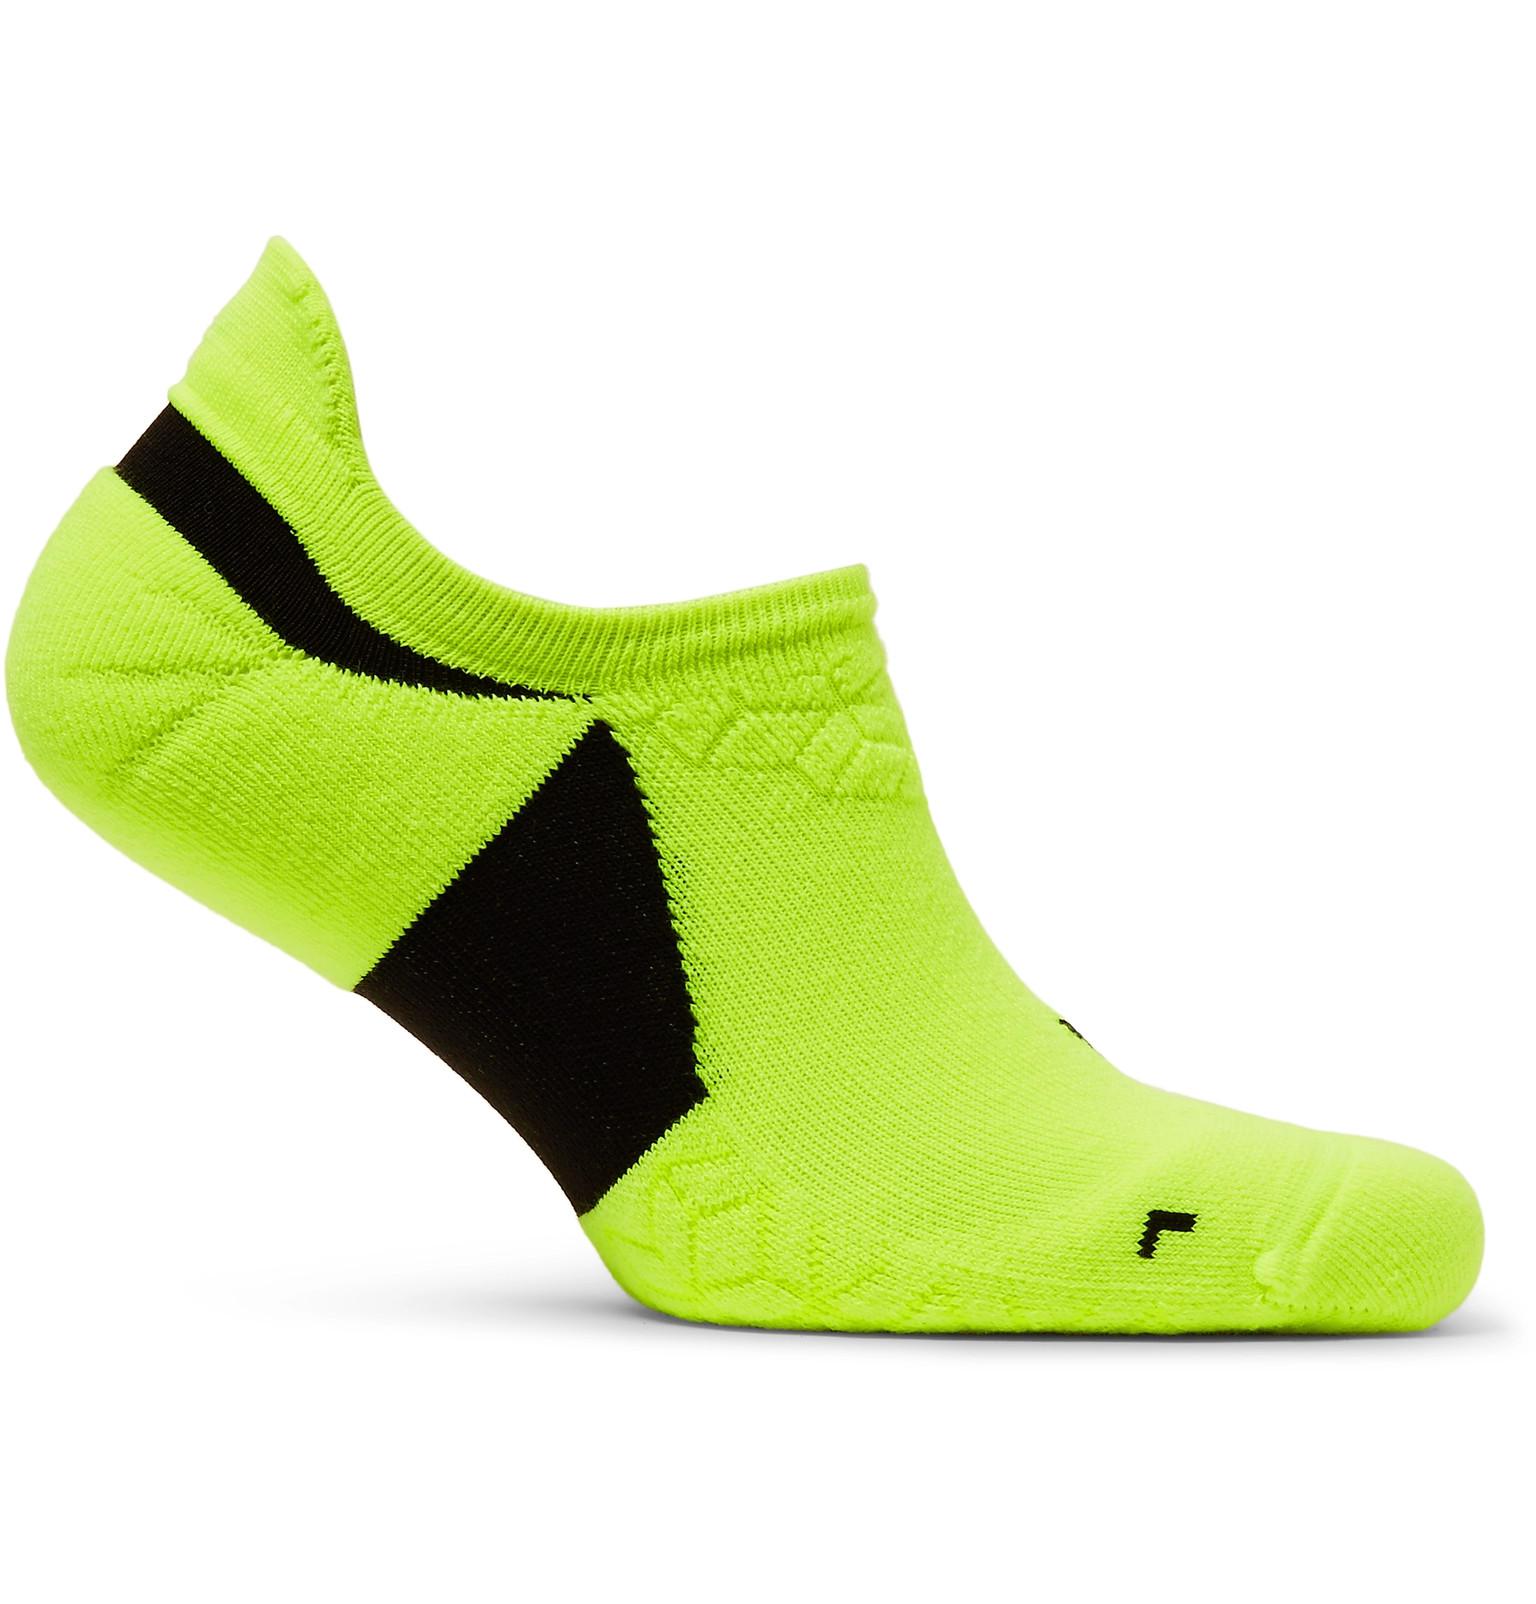 nike fluorescent socks cheap online